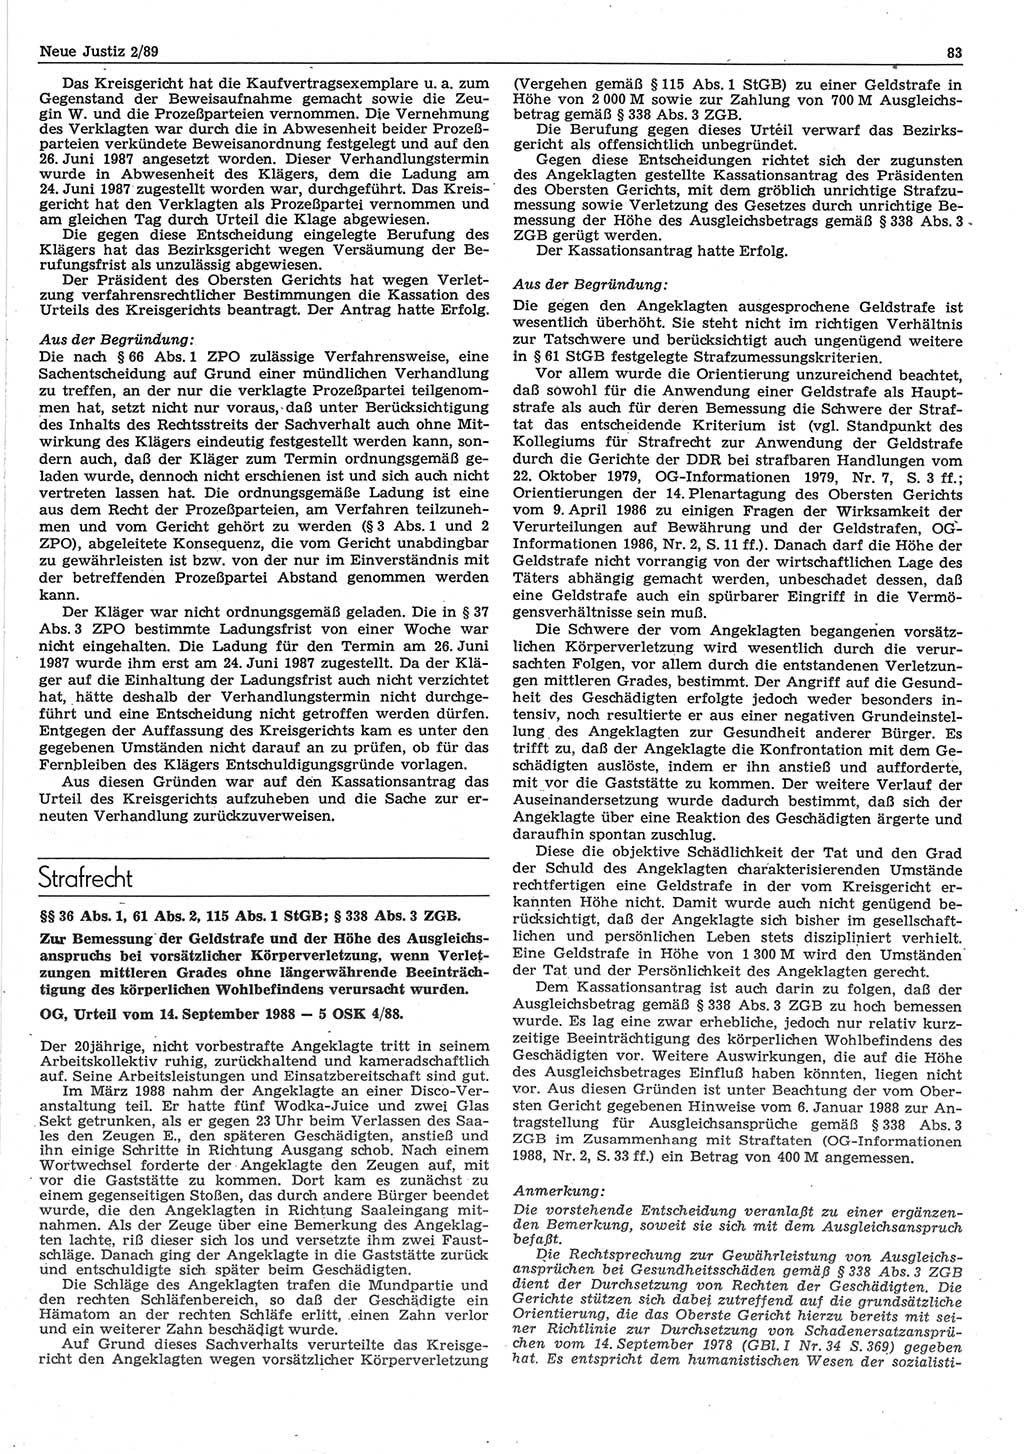 Neue Justiz (NJ), Zeitschrift für sozialistisches Recht und Gesetzlichkeit [Deutsche Demokratische Republik (DDR)], 43. Jahrgang 1989, Seite 83 (NJ DDR 1989, S. 83)